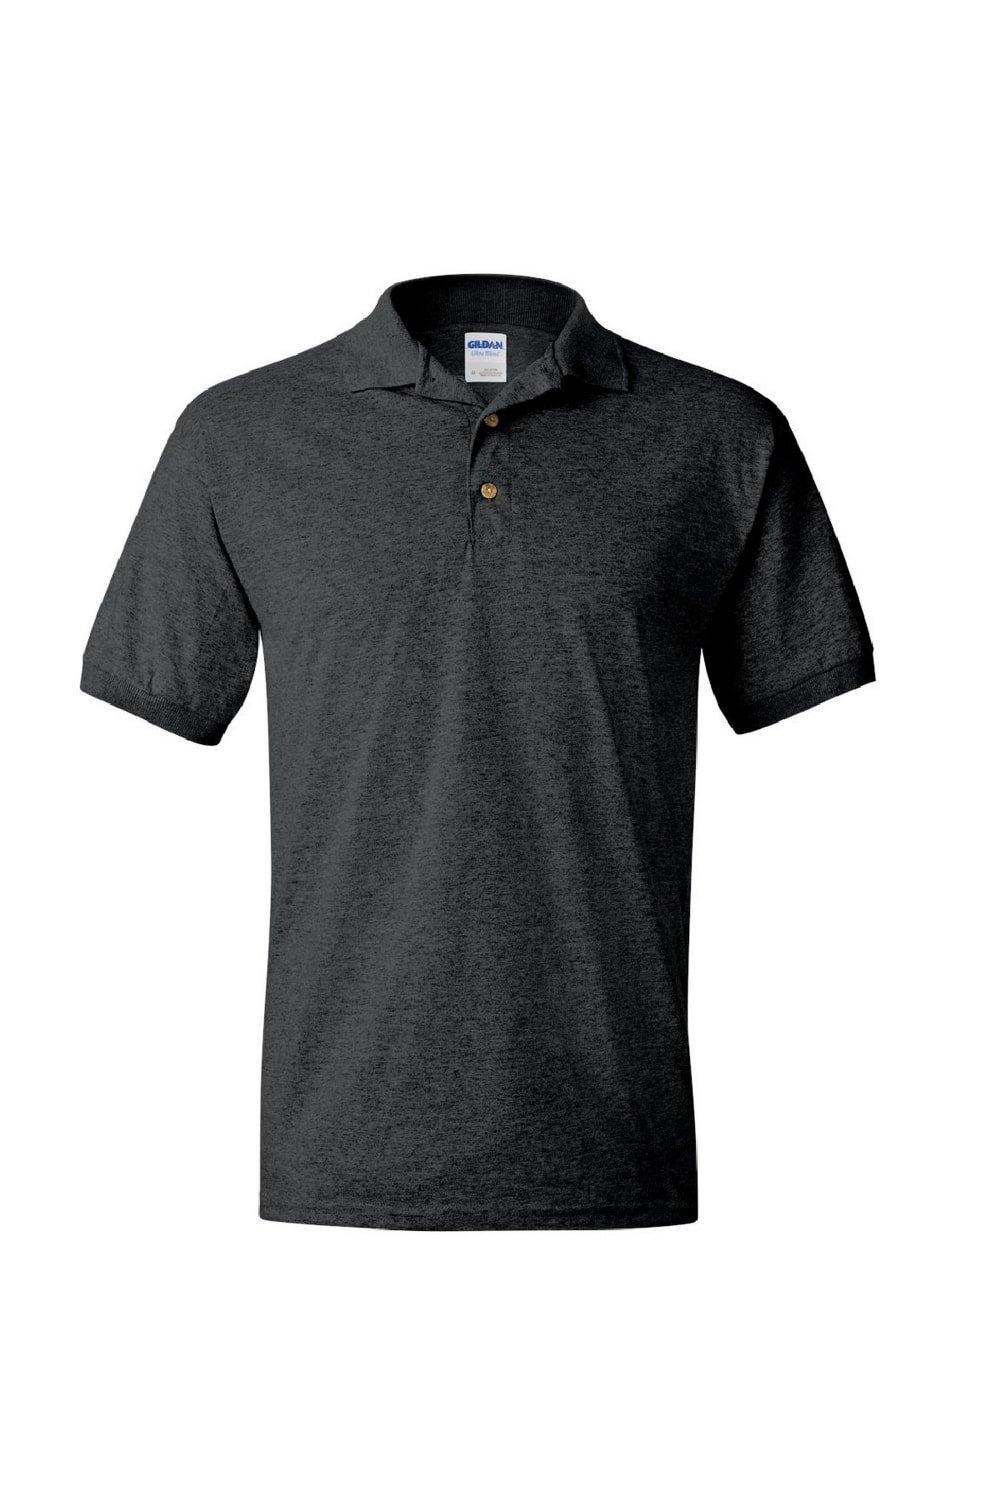 Рубашка поло из джерси DryBlend для взрослых с короткими рукавами Gildan, серый